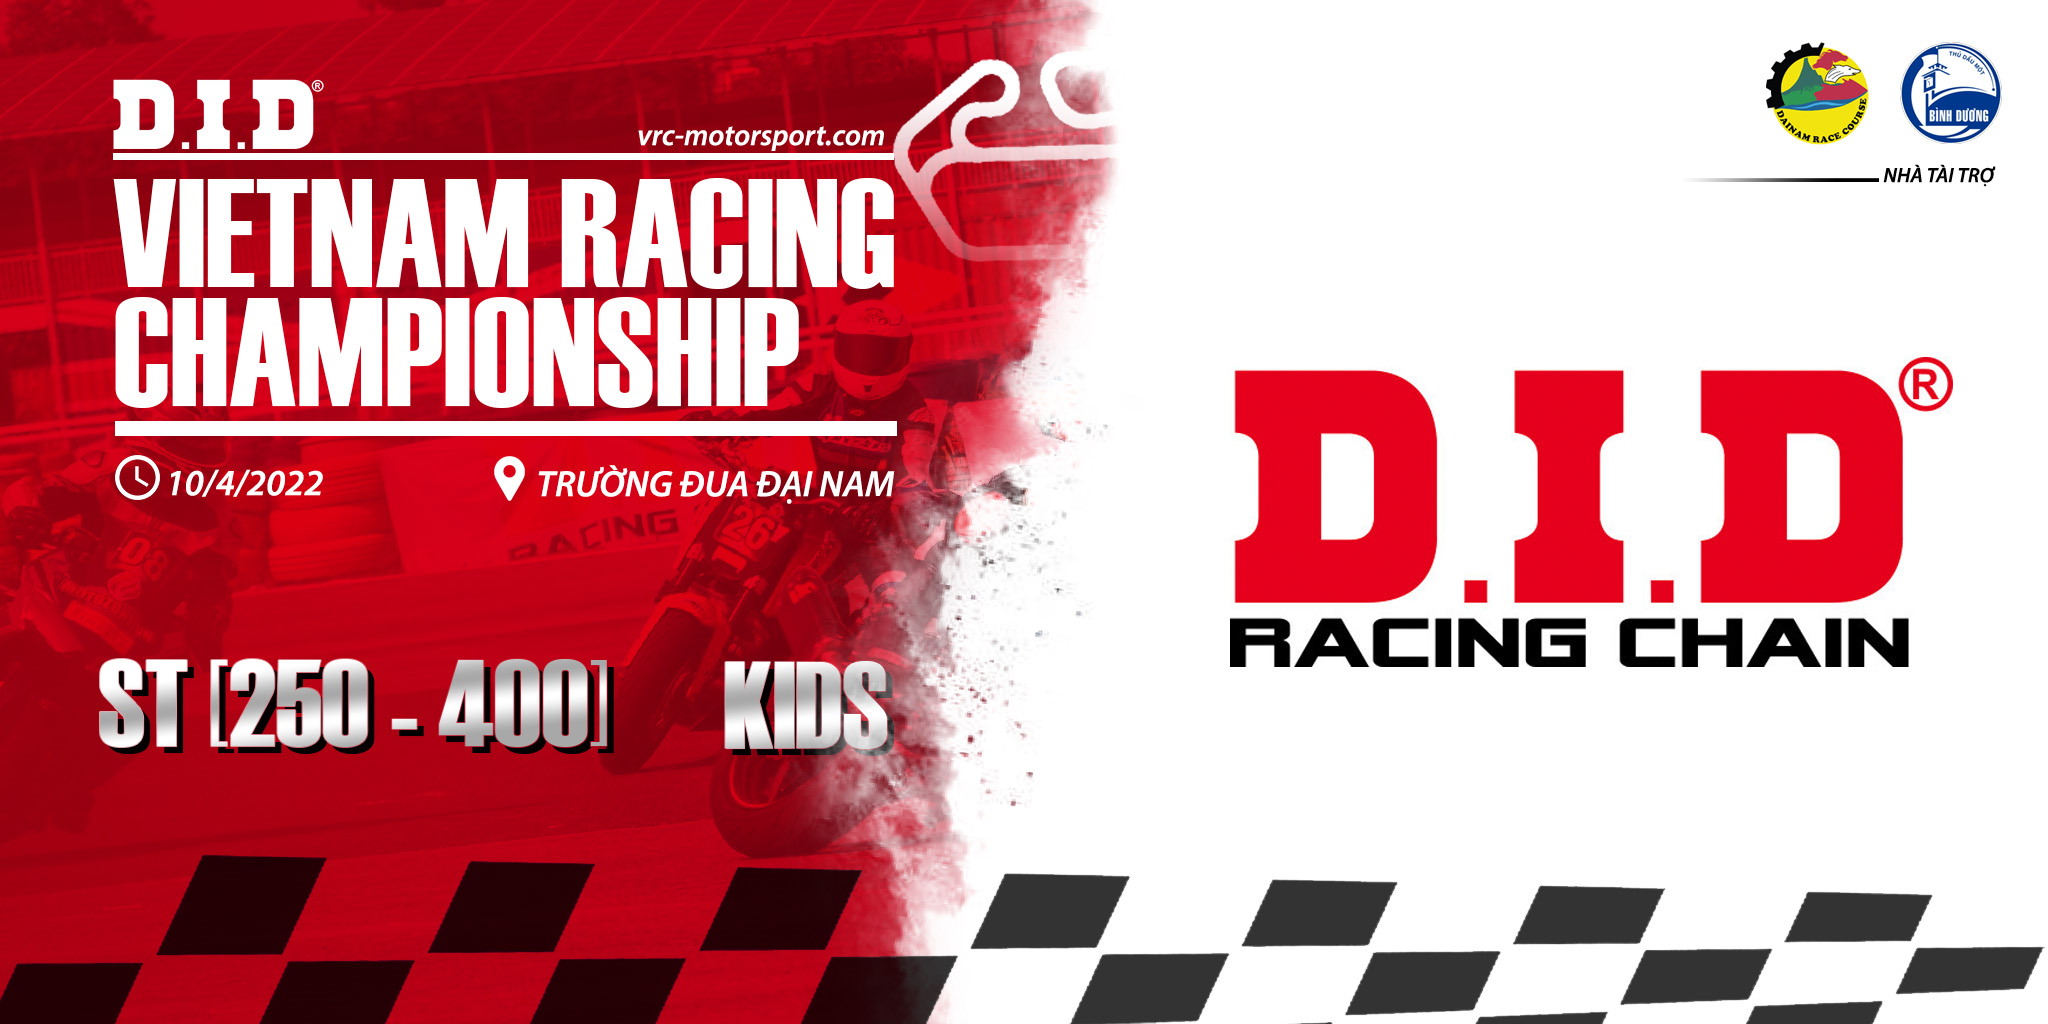 D.I.D - Nhà tài trợ góp phần lớn cho sự thành công của Giải đua moto pkl VRC 2022